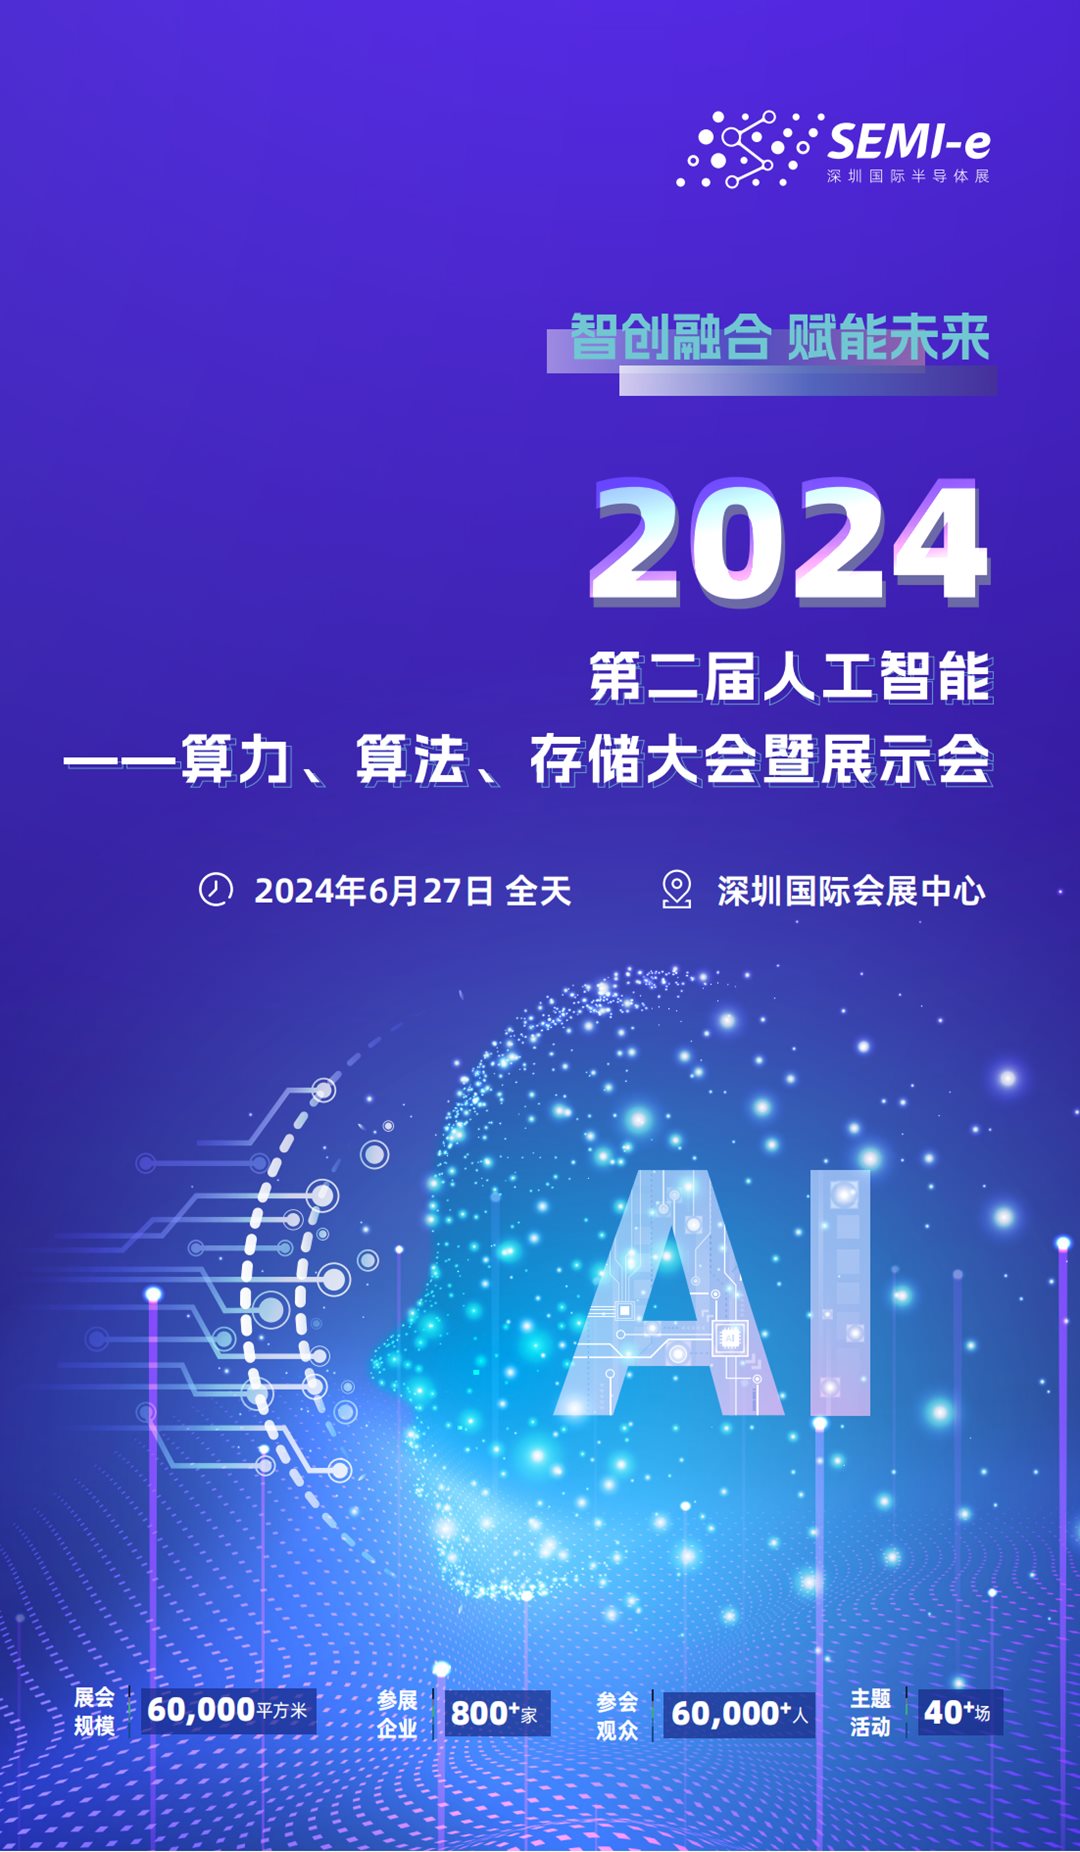 2024 第二届人工智能-算力算法存储大会邀请函_00.png